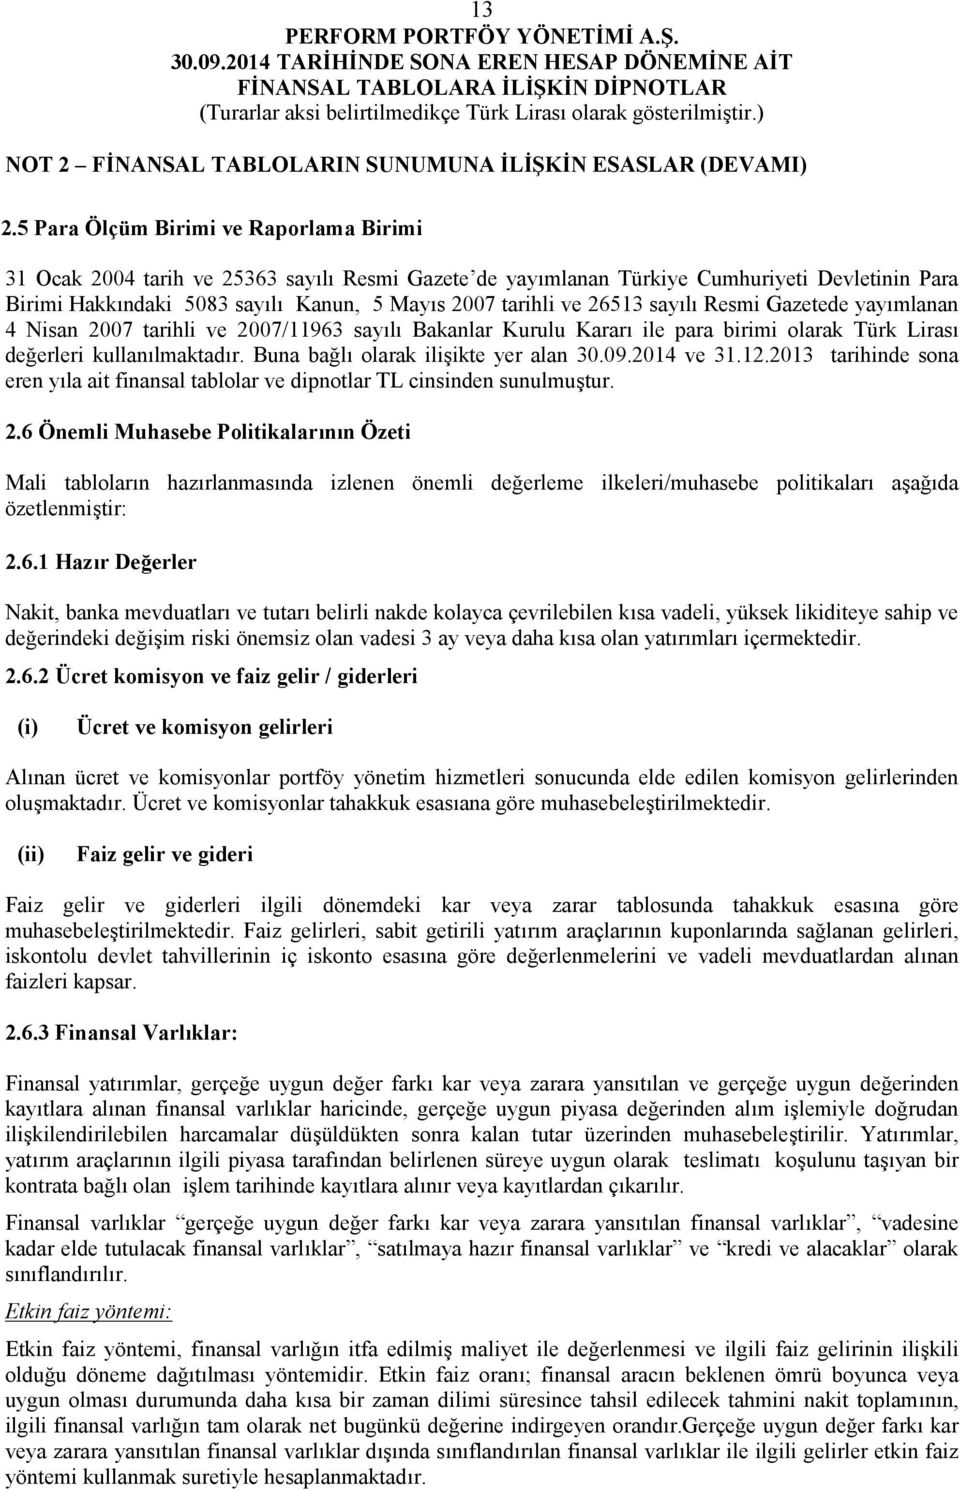 26513 sayılı Resmi Gazetede yayımlanan 4 Nisan 2007 tarihli ve 2007/11963 sayılı Bakanlar Kurulu Kararı ile para birimi olarak Türk Lirası değerleri kullanılmaktadır.